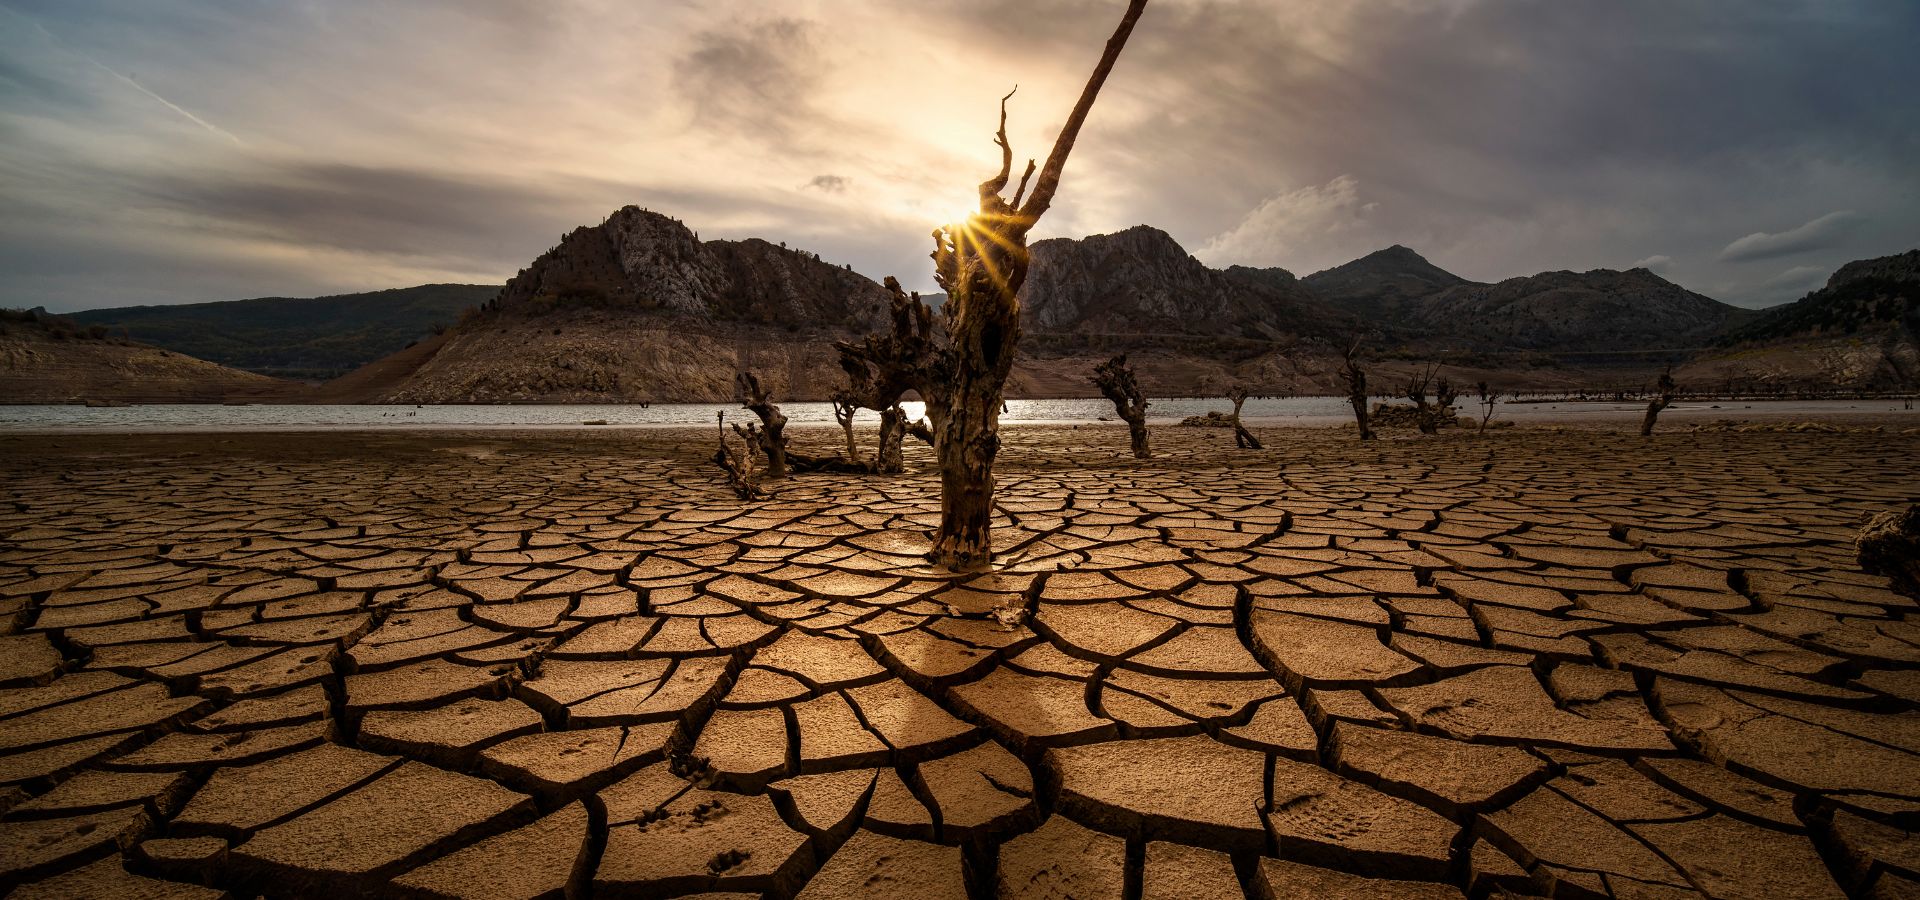 Emergenza siccita: l'acqua come tema di investimento